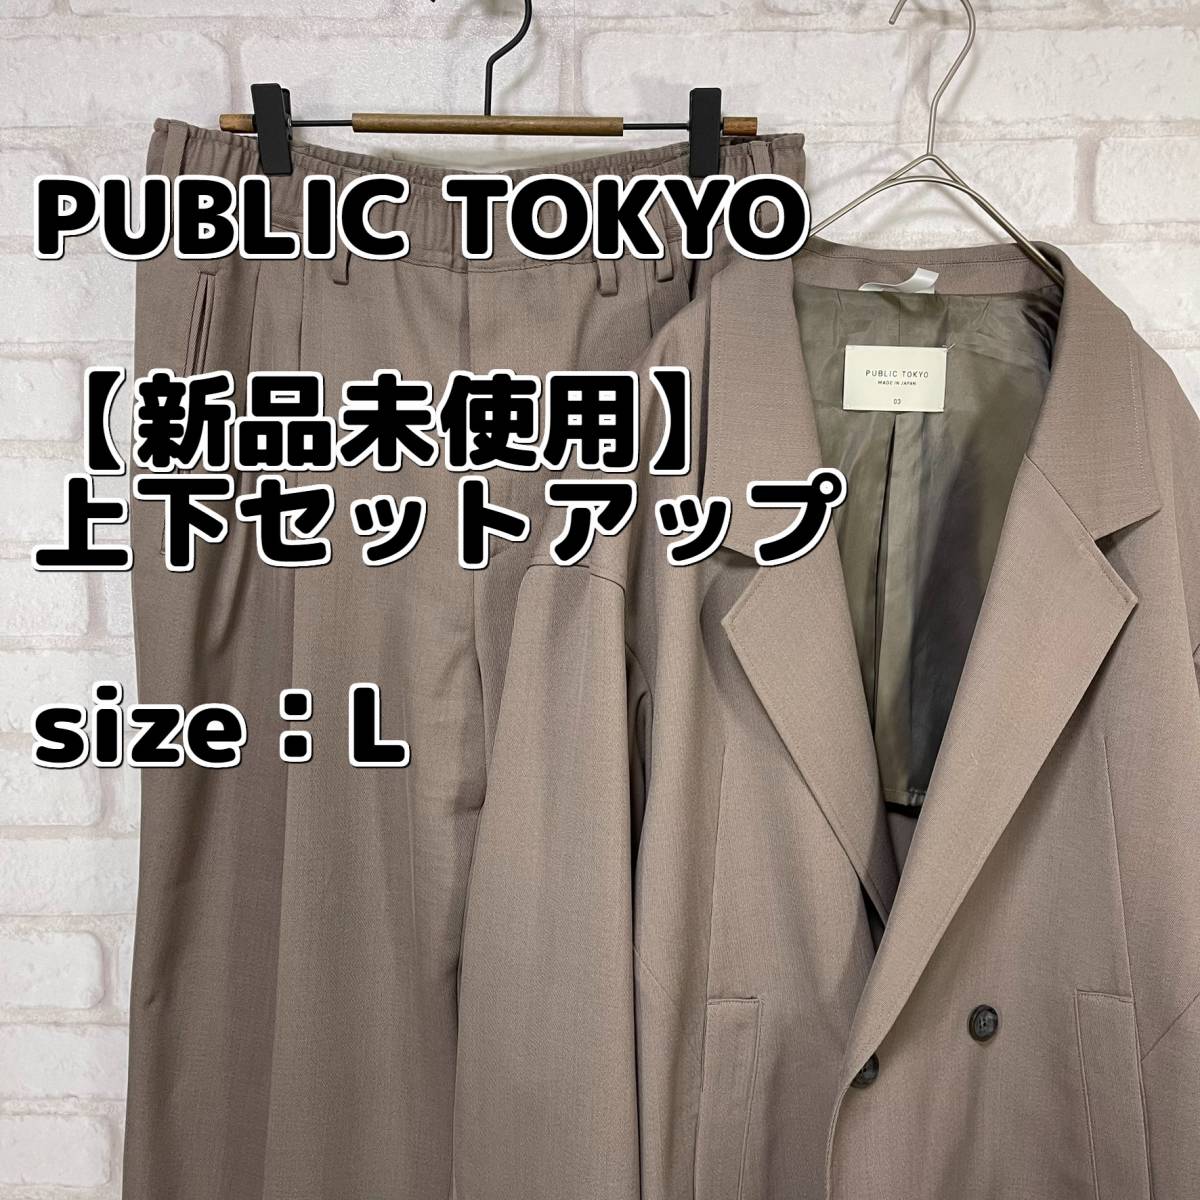 新品未使用】スーツ上下 セットアップ PUBLIC TOKYO Lサイズ